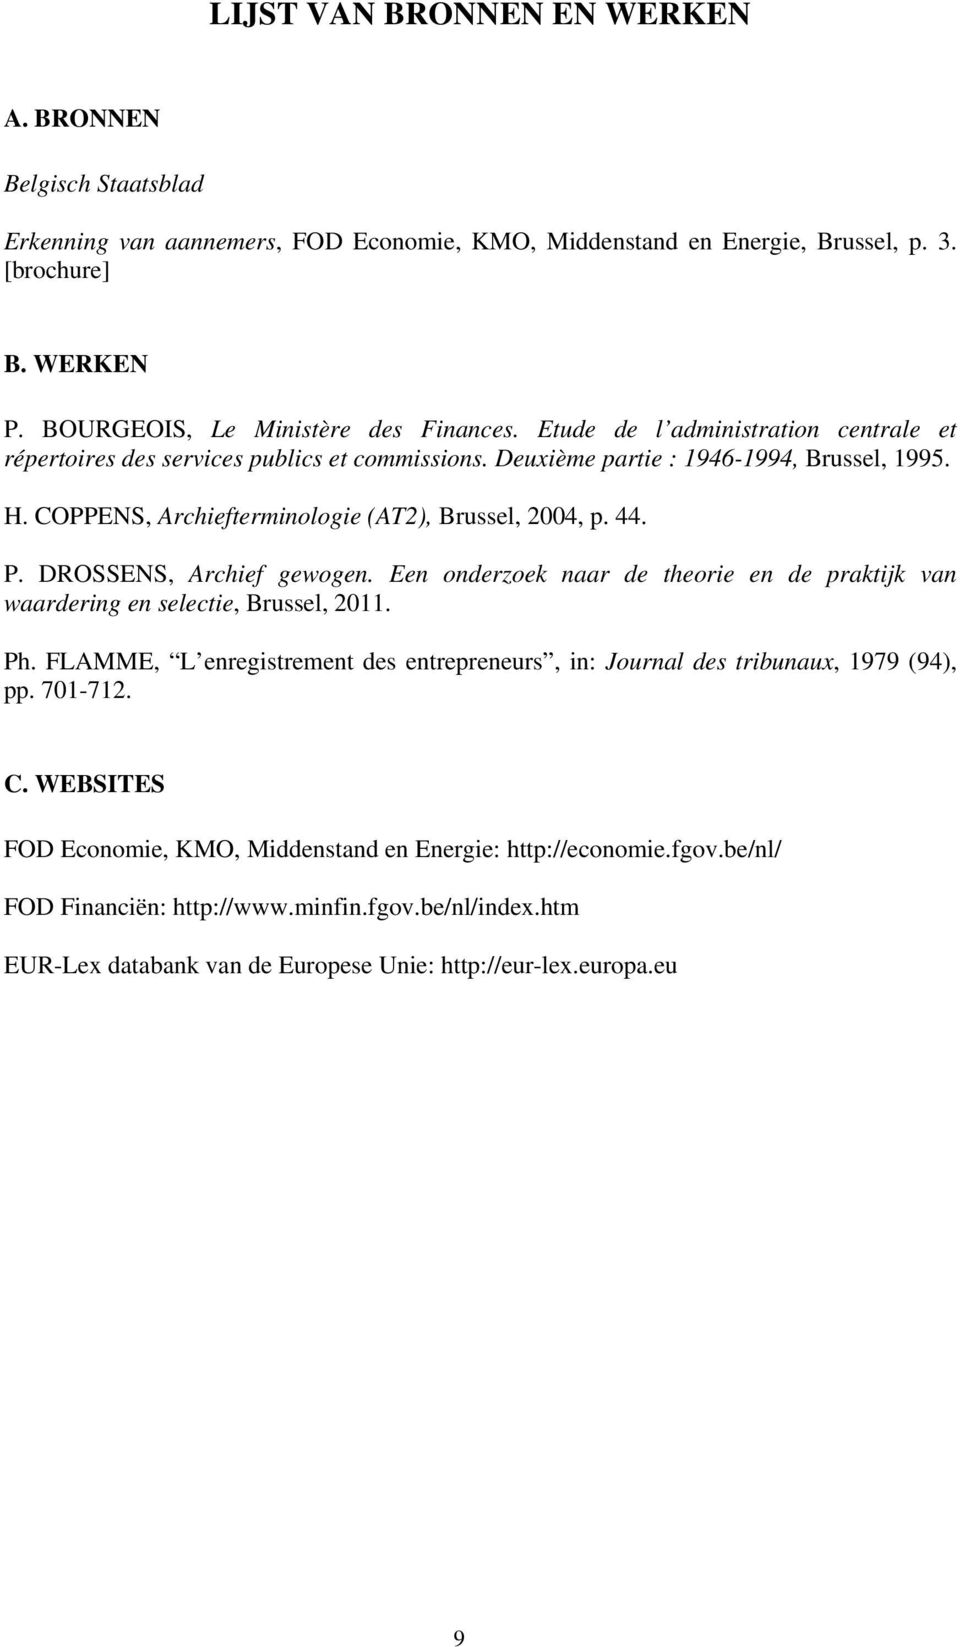 COPPENS, Archiefterminologie (AT2), Brussel, 2004, p. 44. P. DROSSENS, Archief gewogen. Een onderzoek naar de theorie en de praktijk van waardering en selectie, Brussel, 2011. Ph.